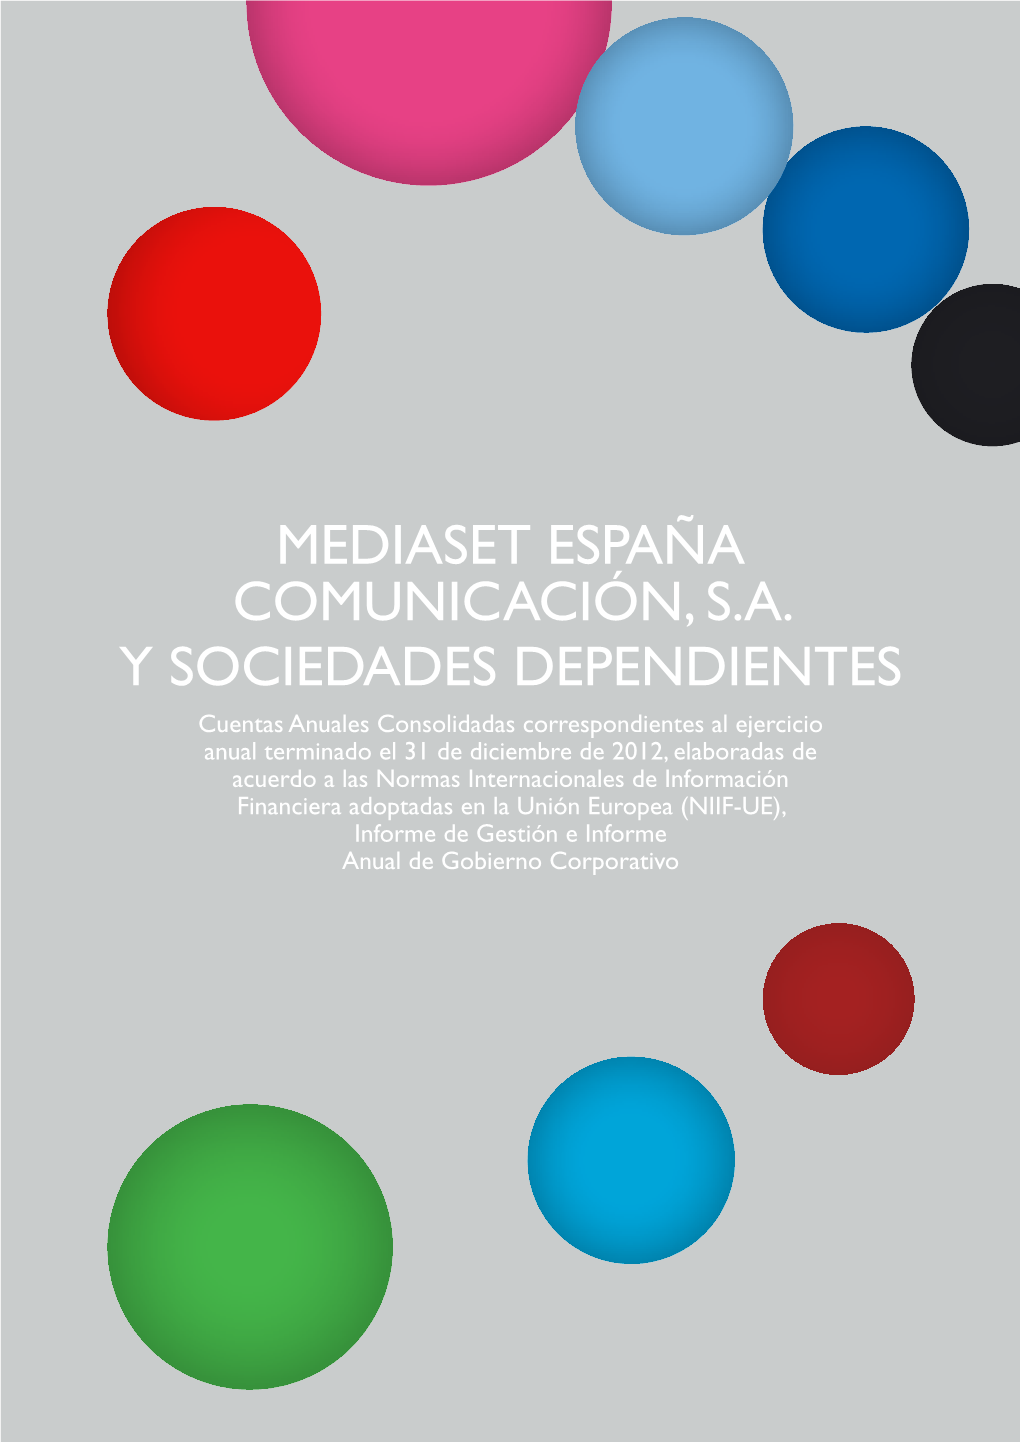 Mediaset España Comunicación, S.A. Y